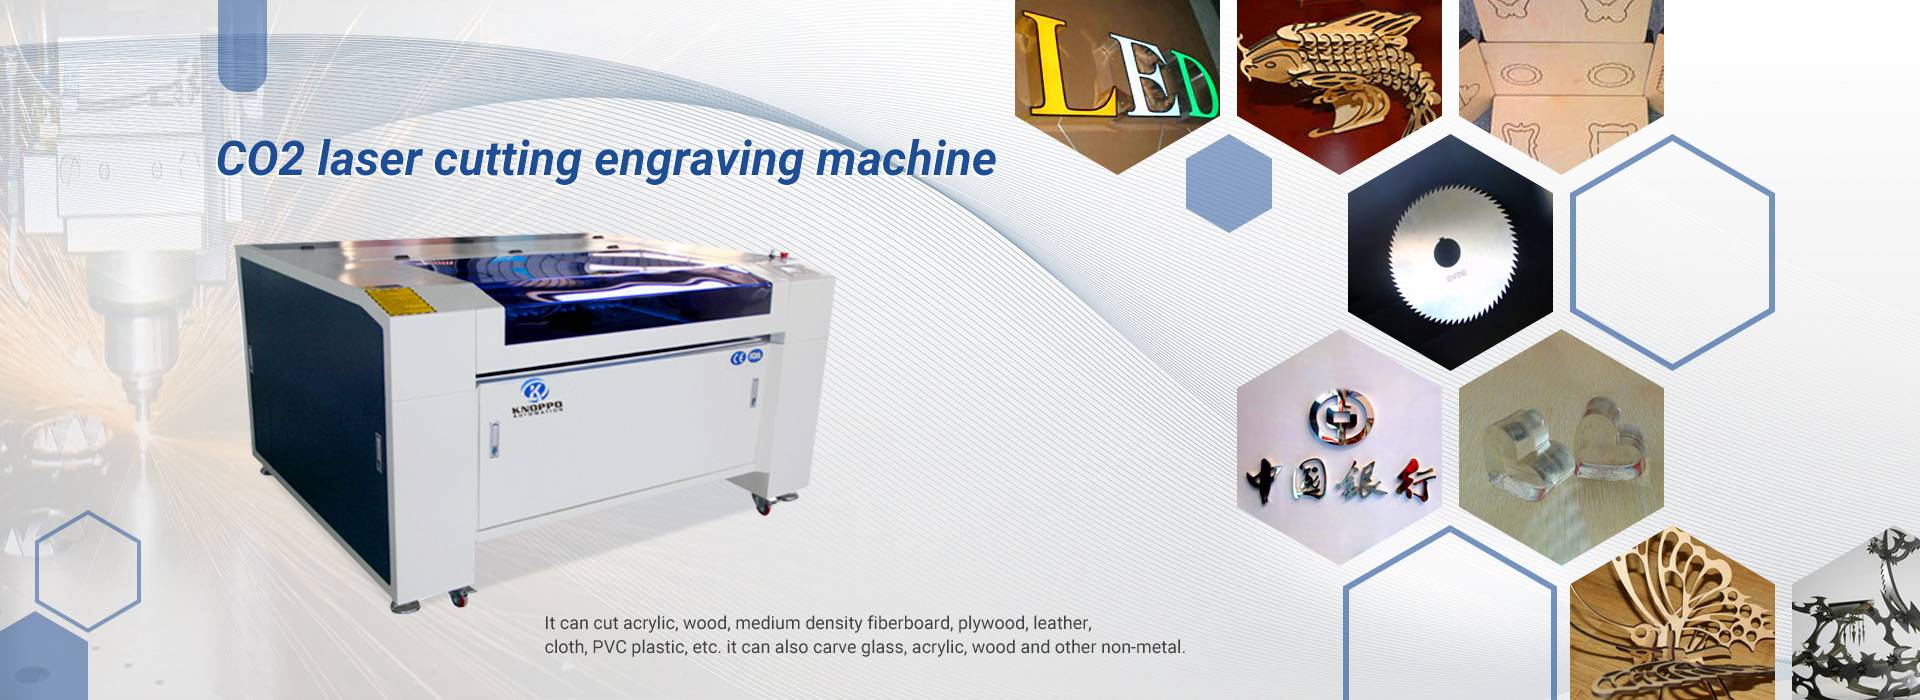 co2 laser cutting engraving machine